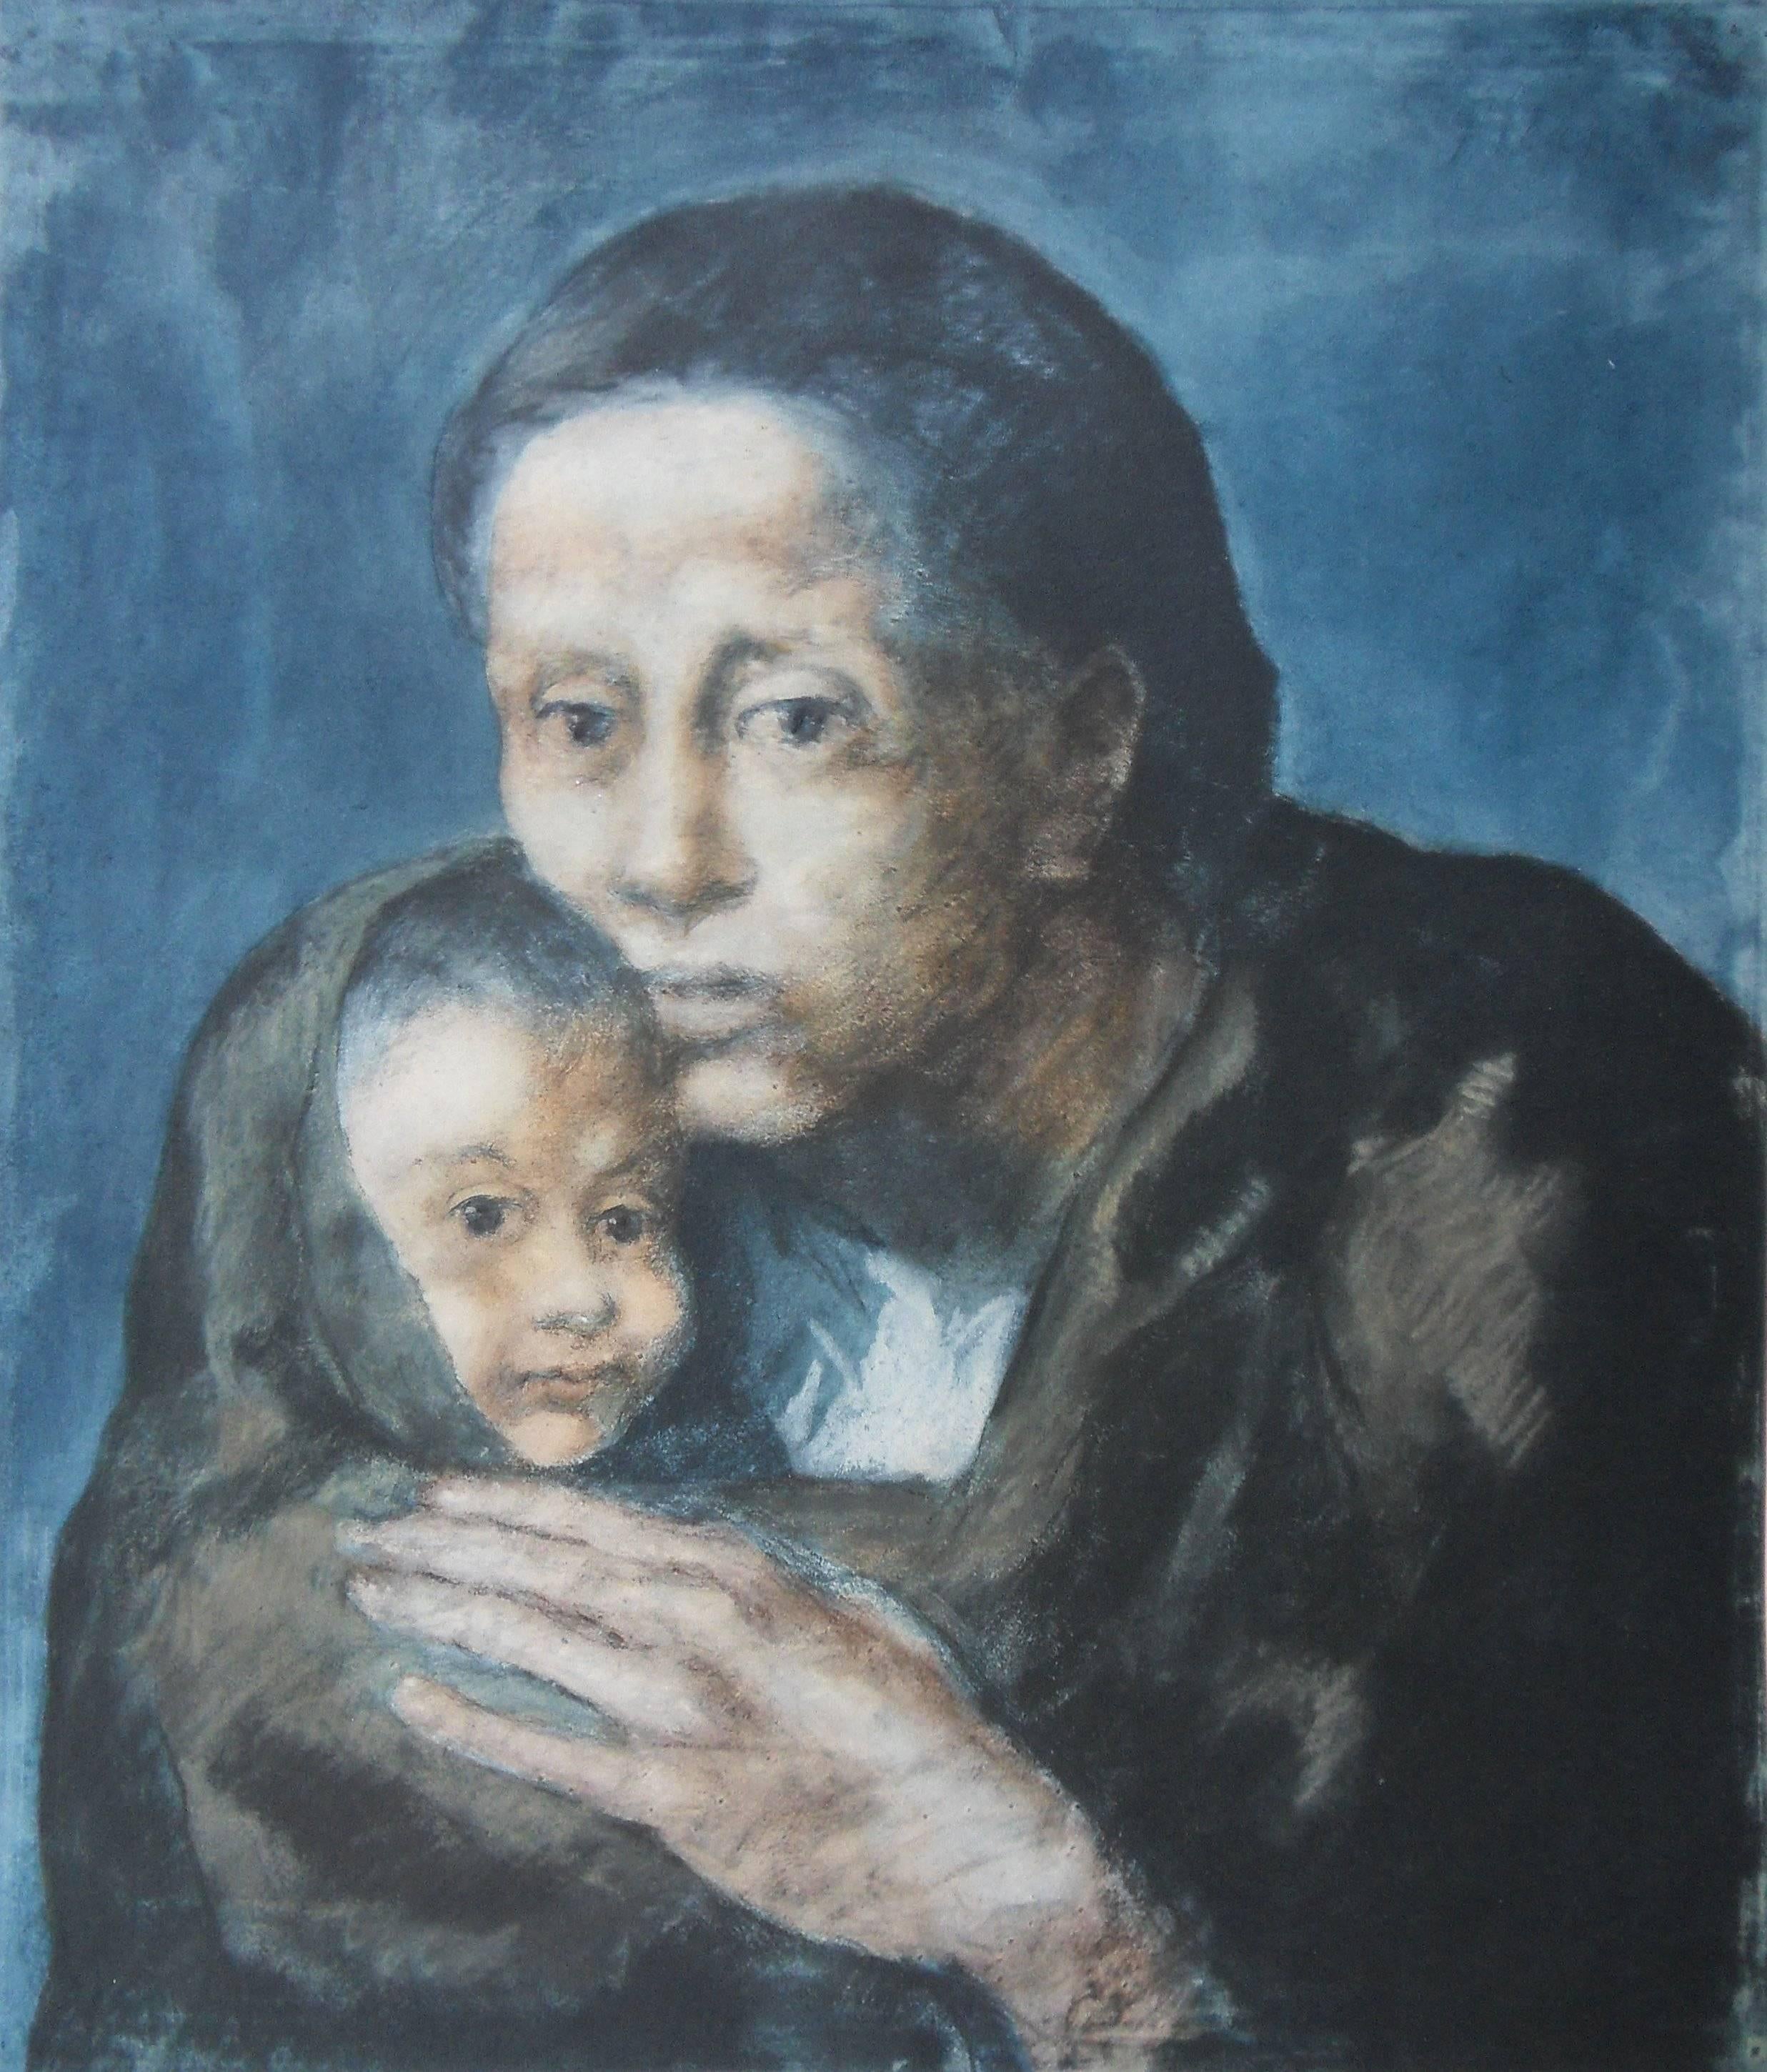 Unknown Portrait Print - Pablo PICASSO (after) : Blue Period, Maternity - Pochoir - 500 copies - 1963